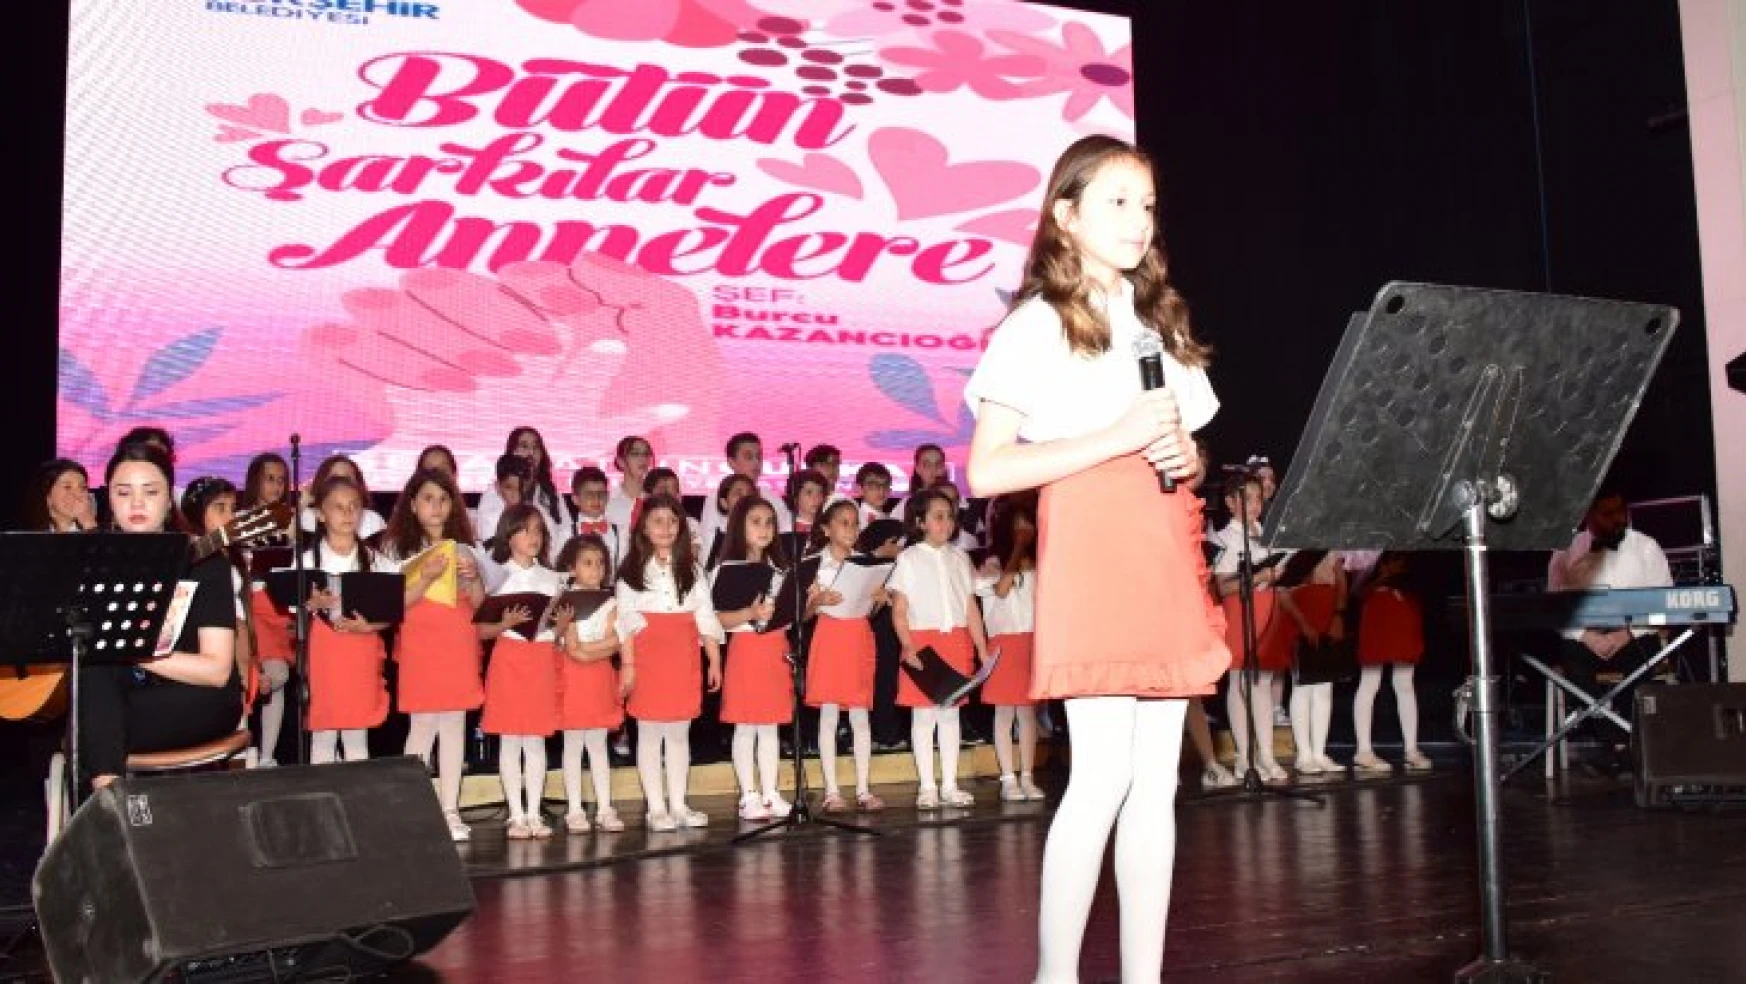 Malatya Büyükşehir Belediyesi Çocuk Korosundan 'Bütün Şarkılar Annelere' Konseri